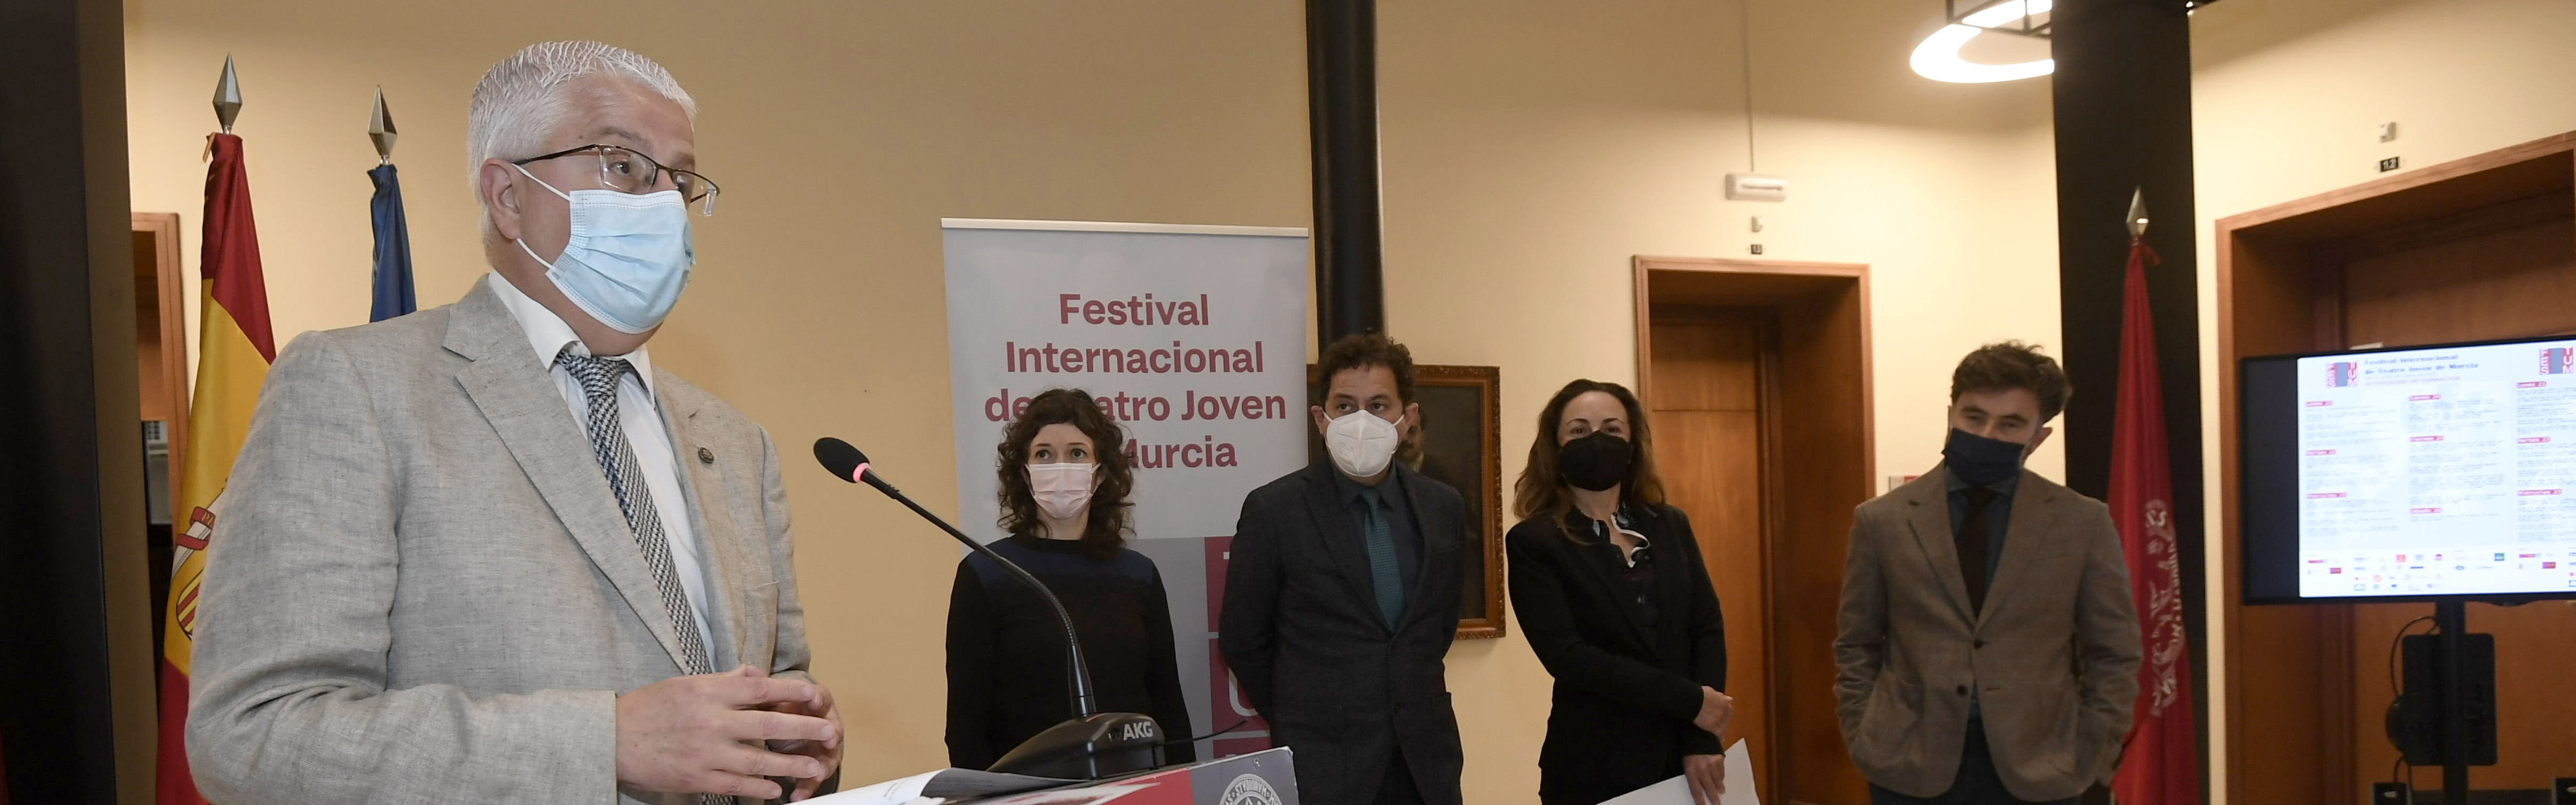 Nota de prensa - La Universidad de Murcia y la ESAD organizan el Festival Internacional FESTUM de Teatro Joven